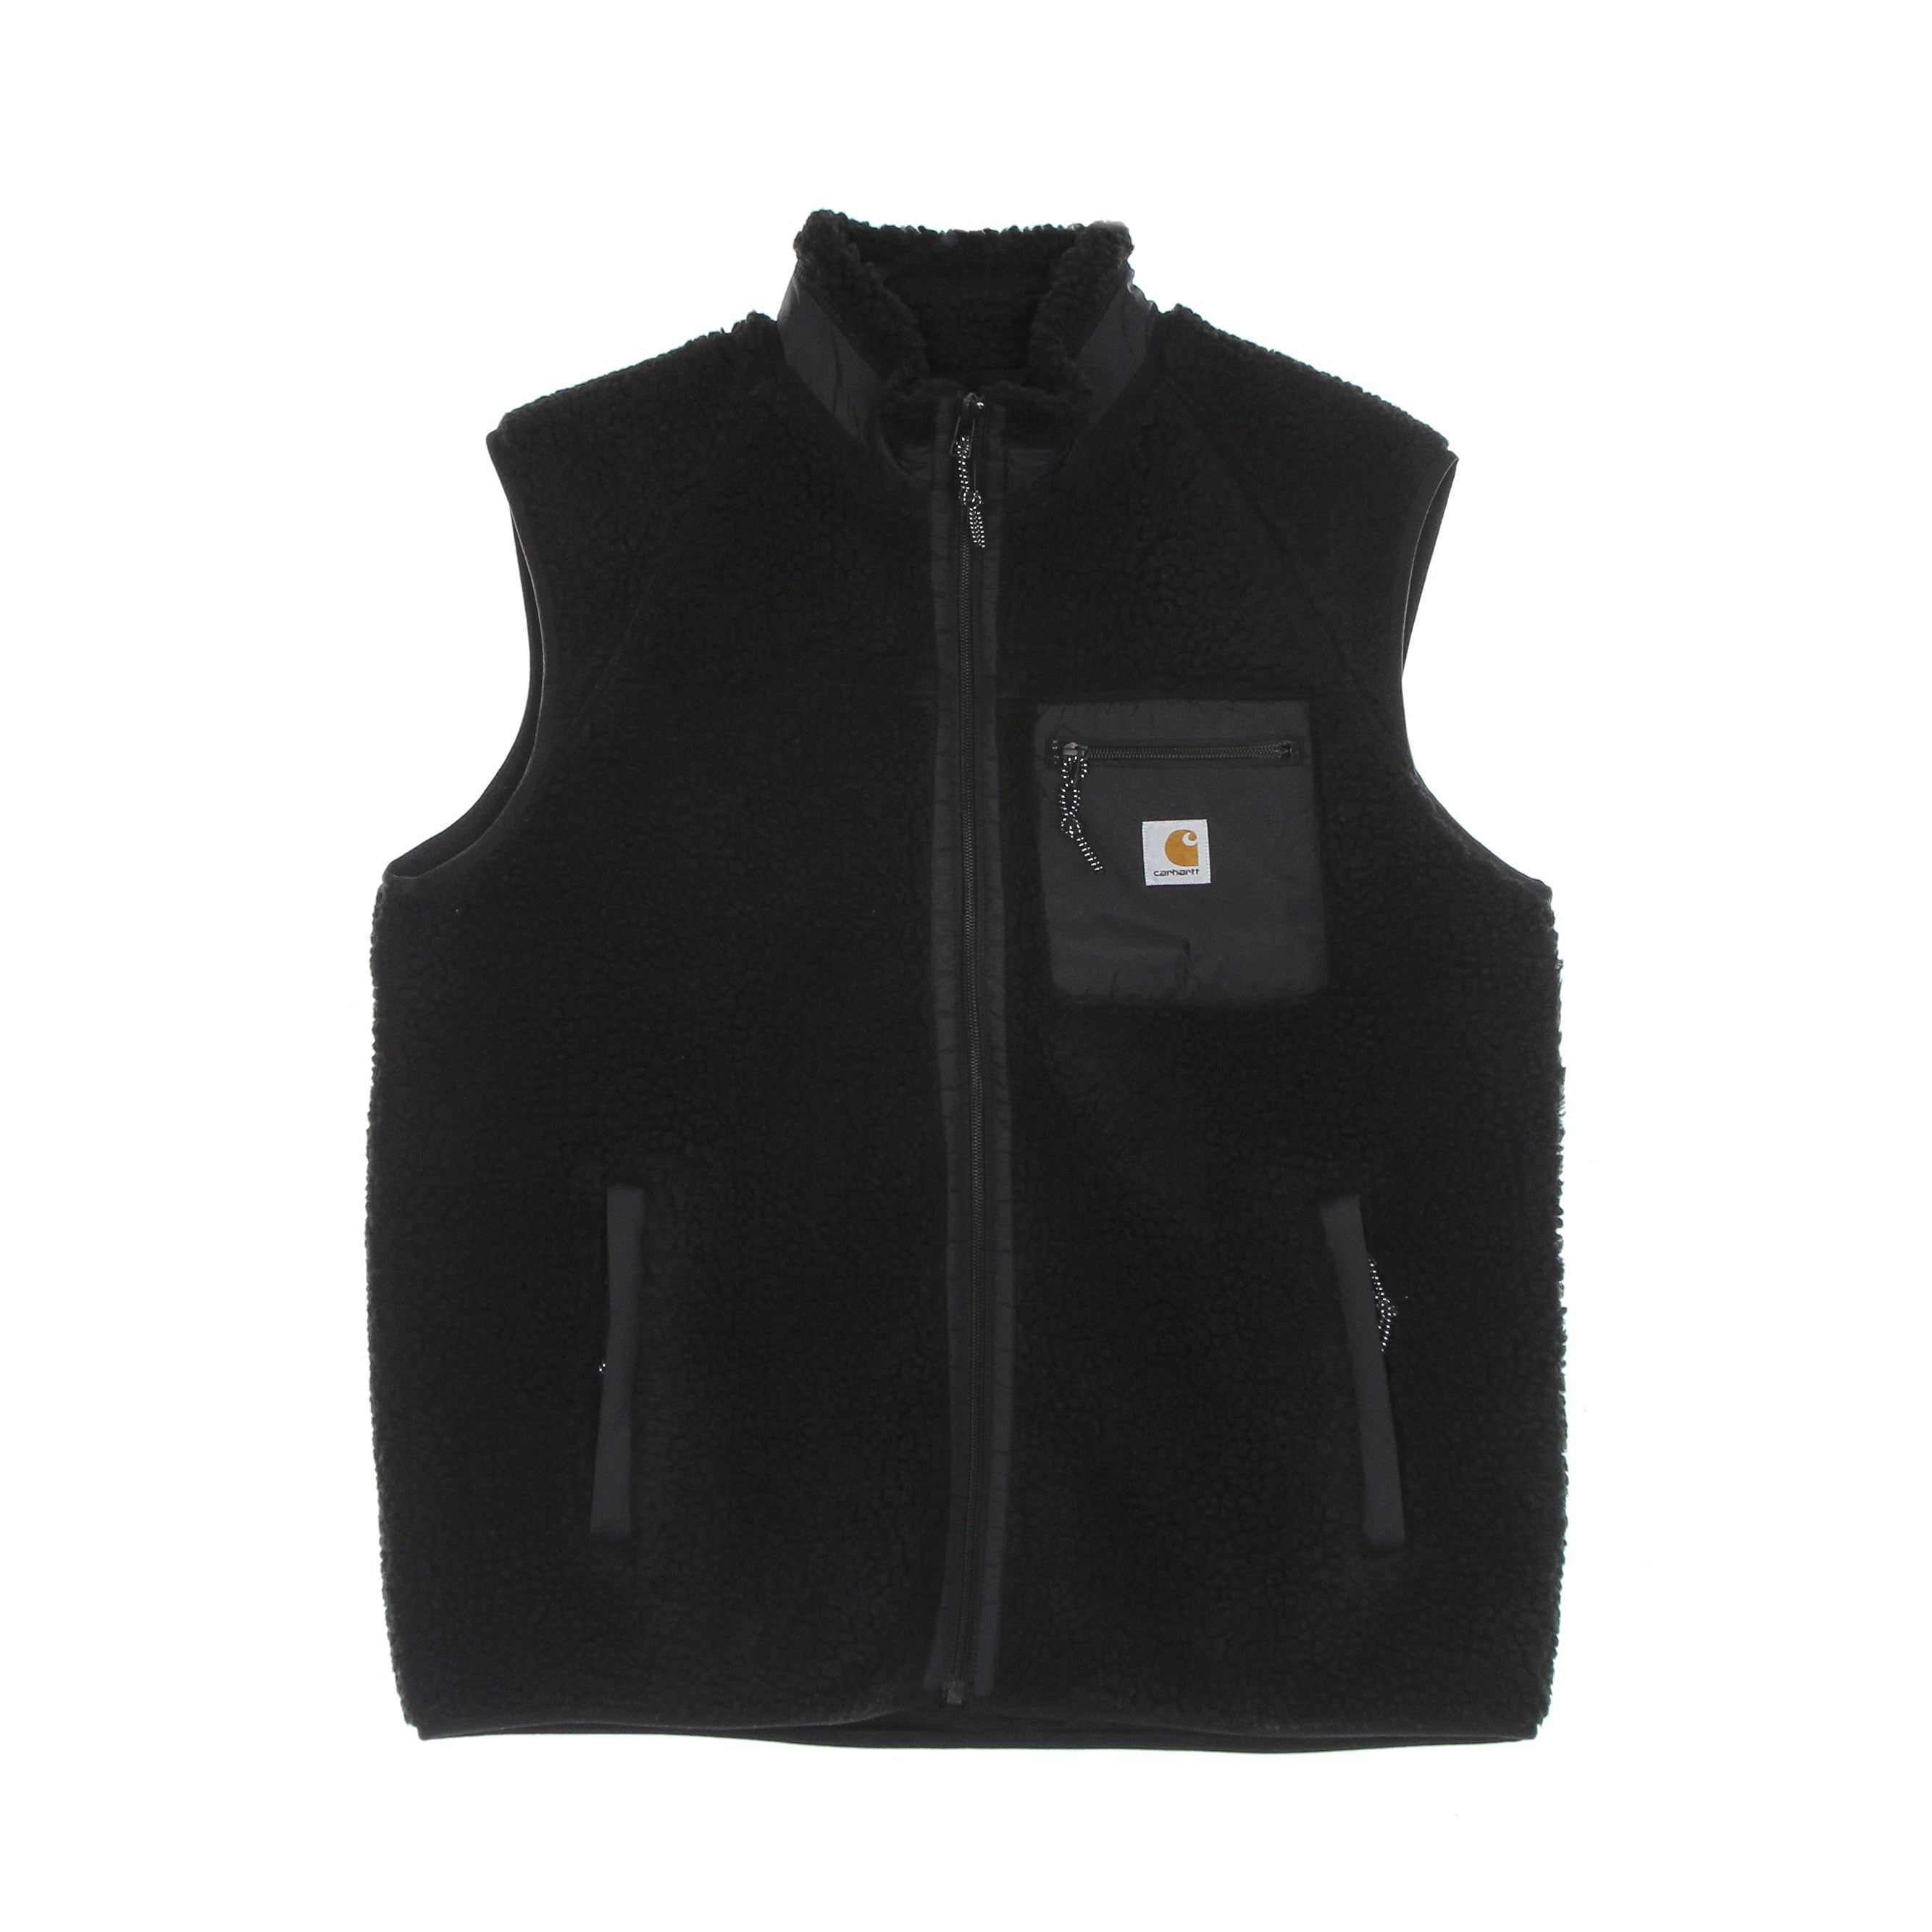 Prentis Vest Liner Men's Sleeveless Black/black